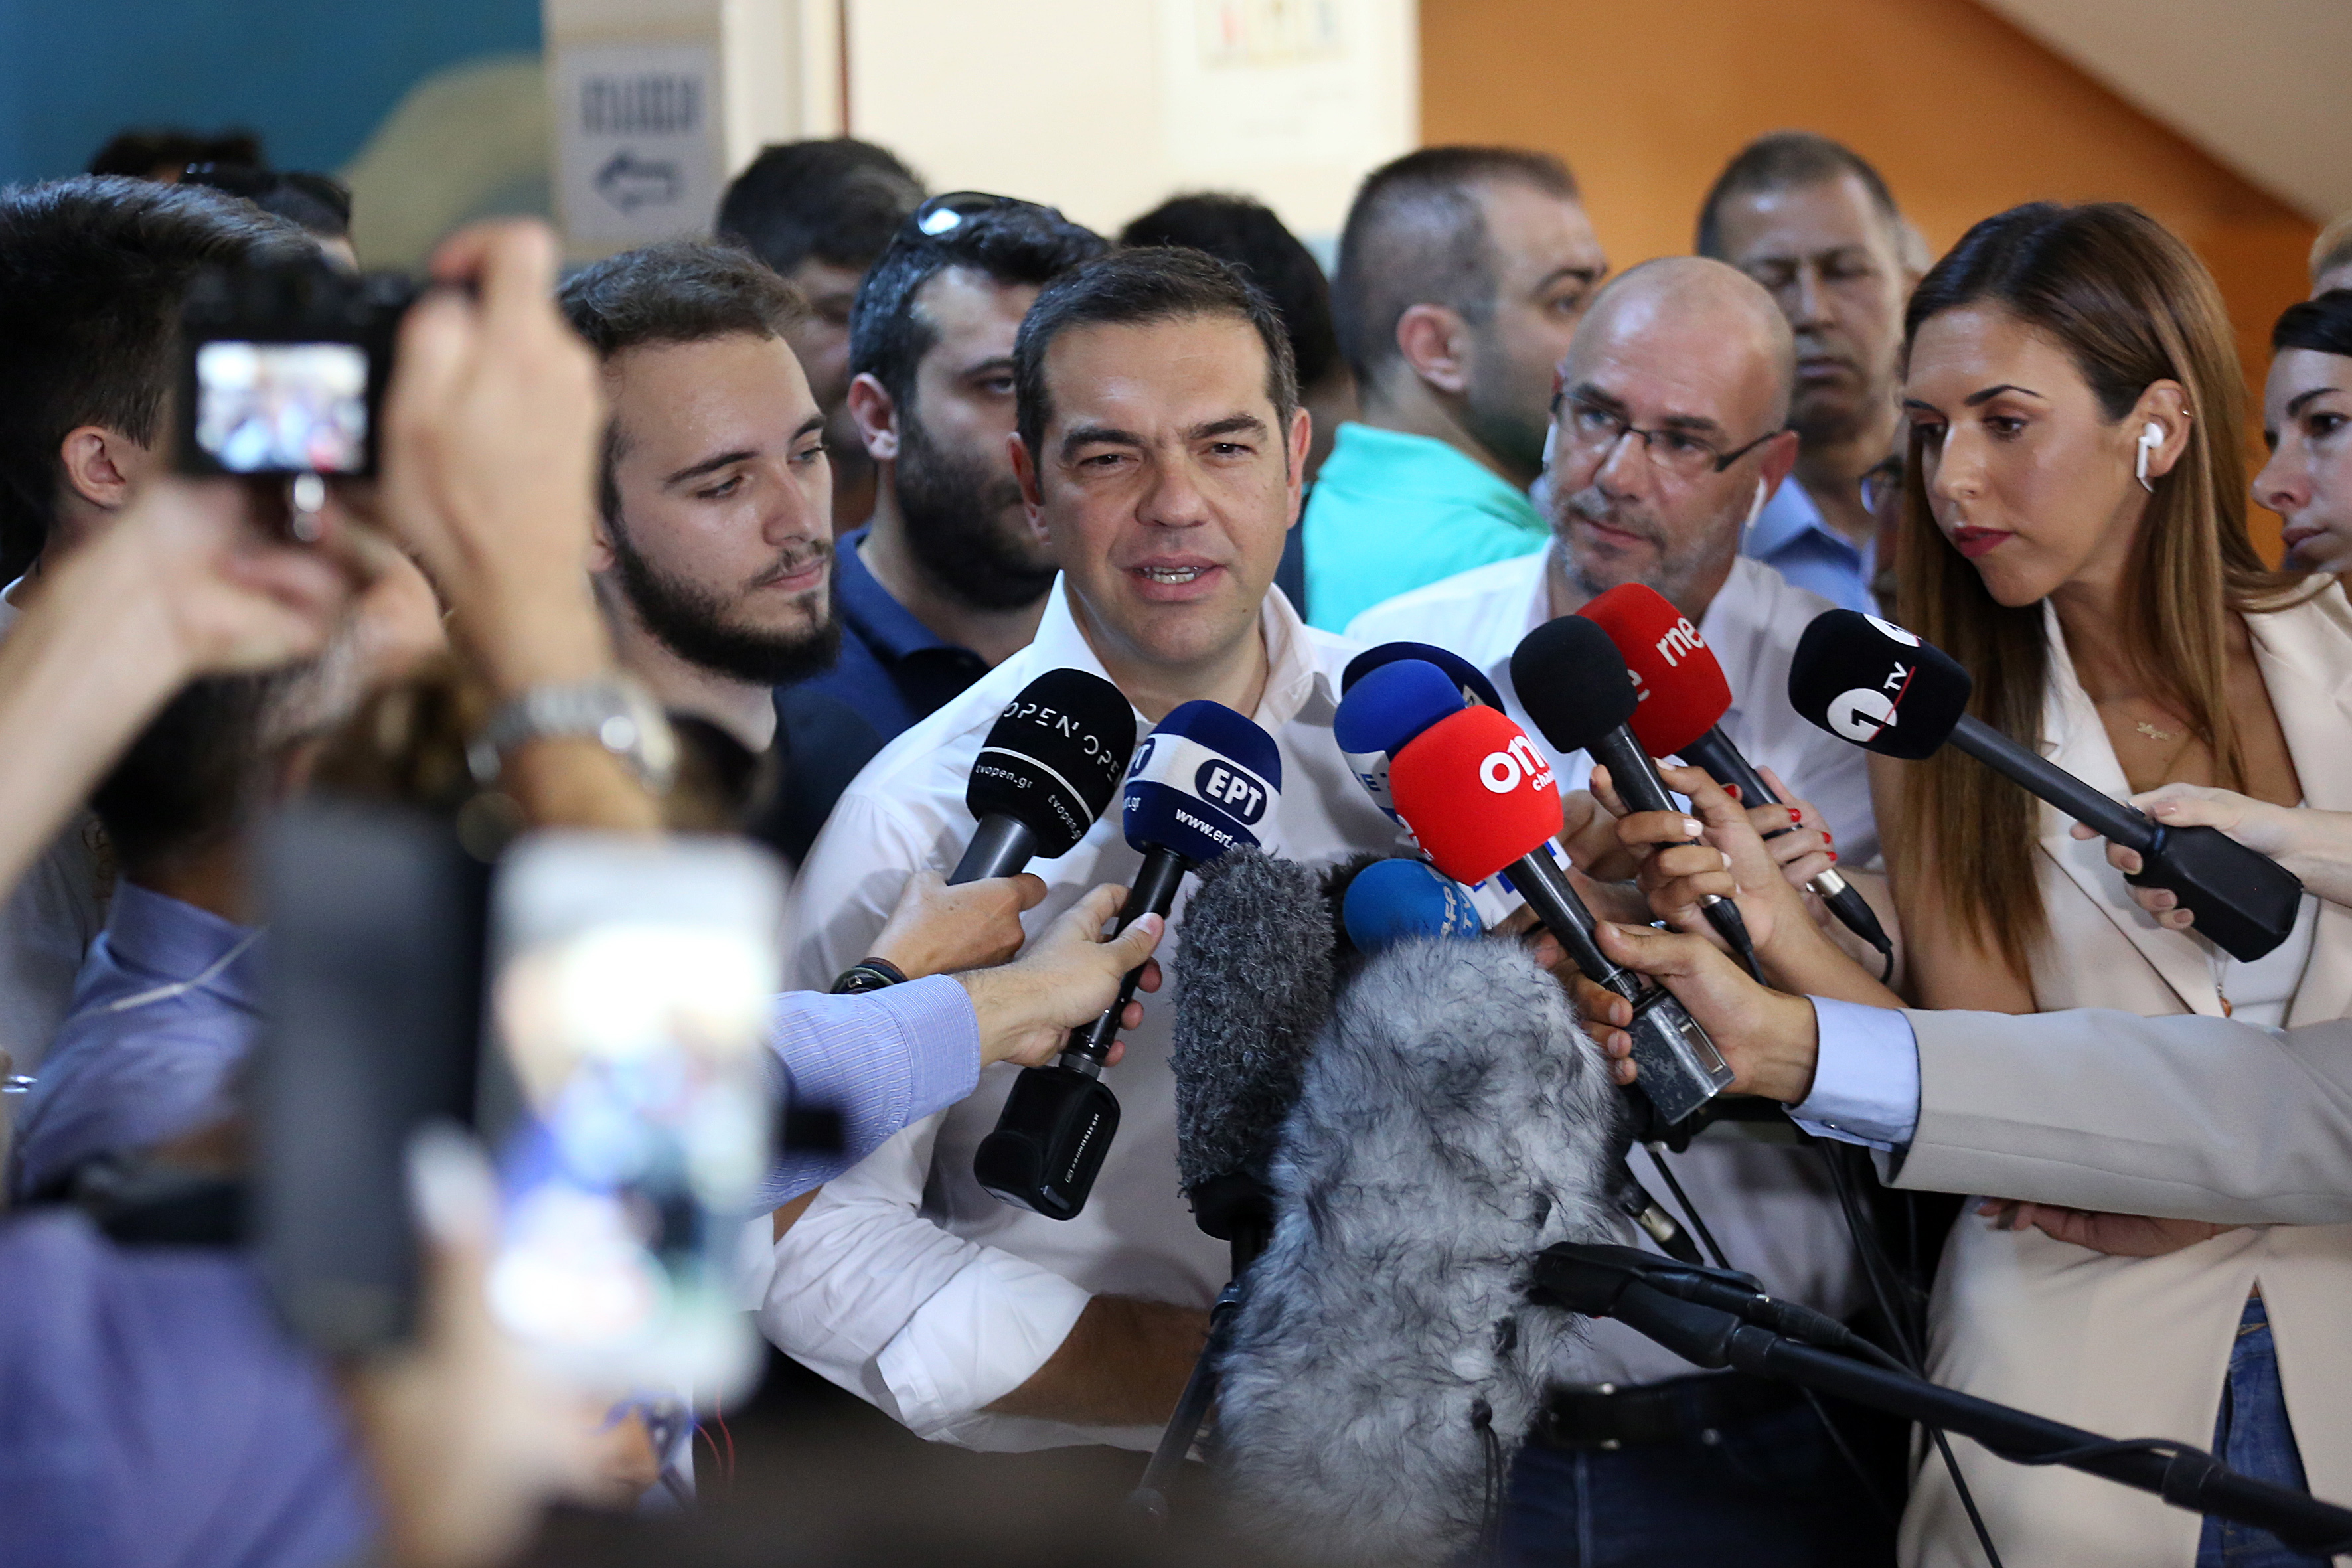 Waarnemers schrijven de nederlaag van de linkse premier Alexis Tsipras en zijn Syriza-partij toe aan de strenge bezuinigingsmaatregelen van de afgelopen jaren